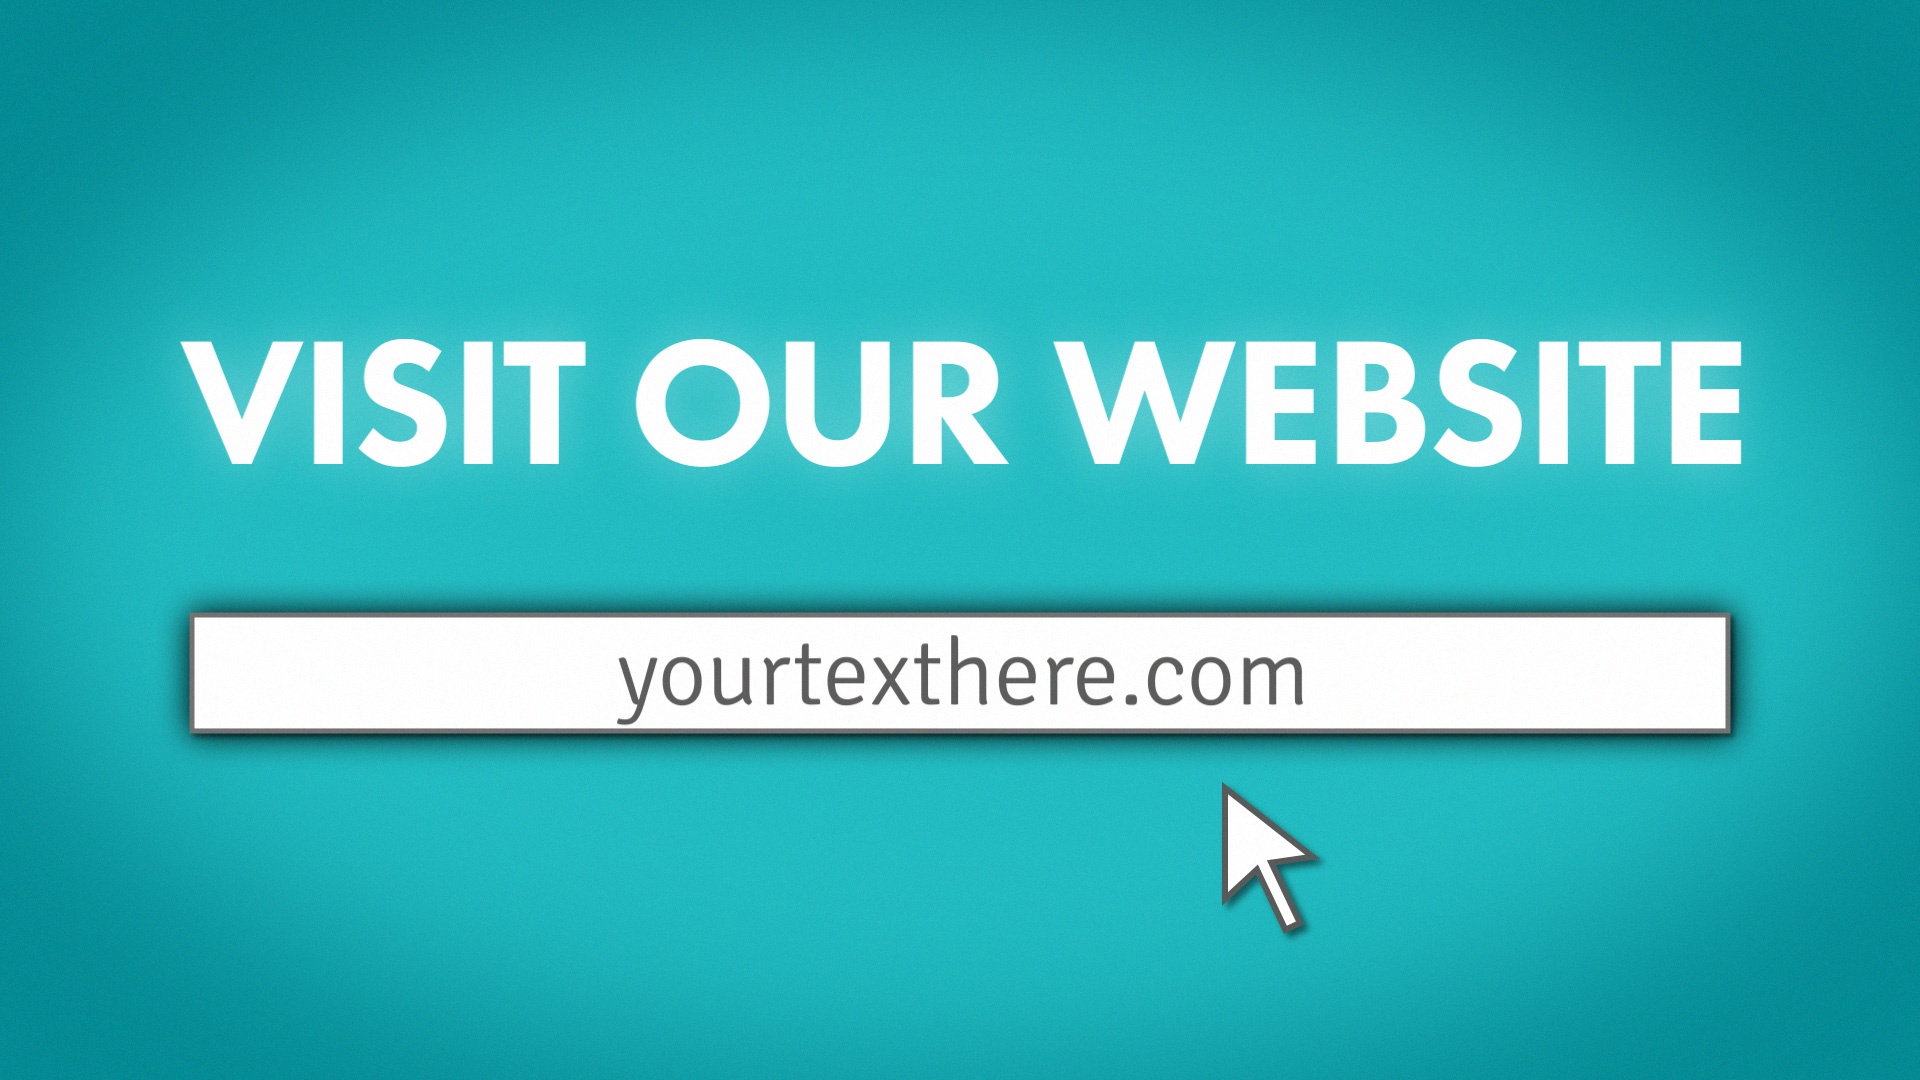 website you visit